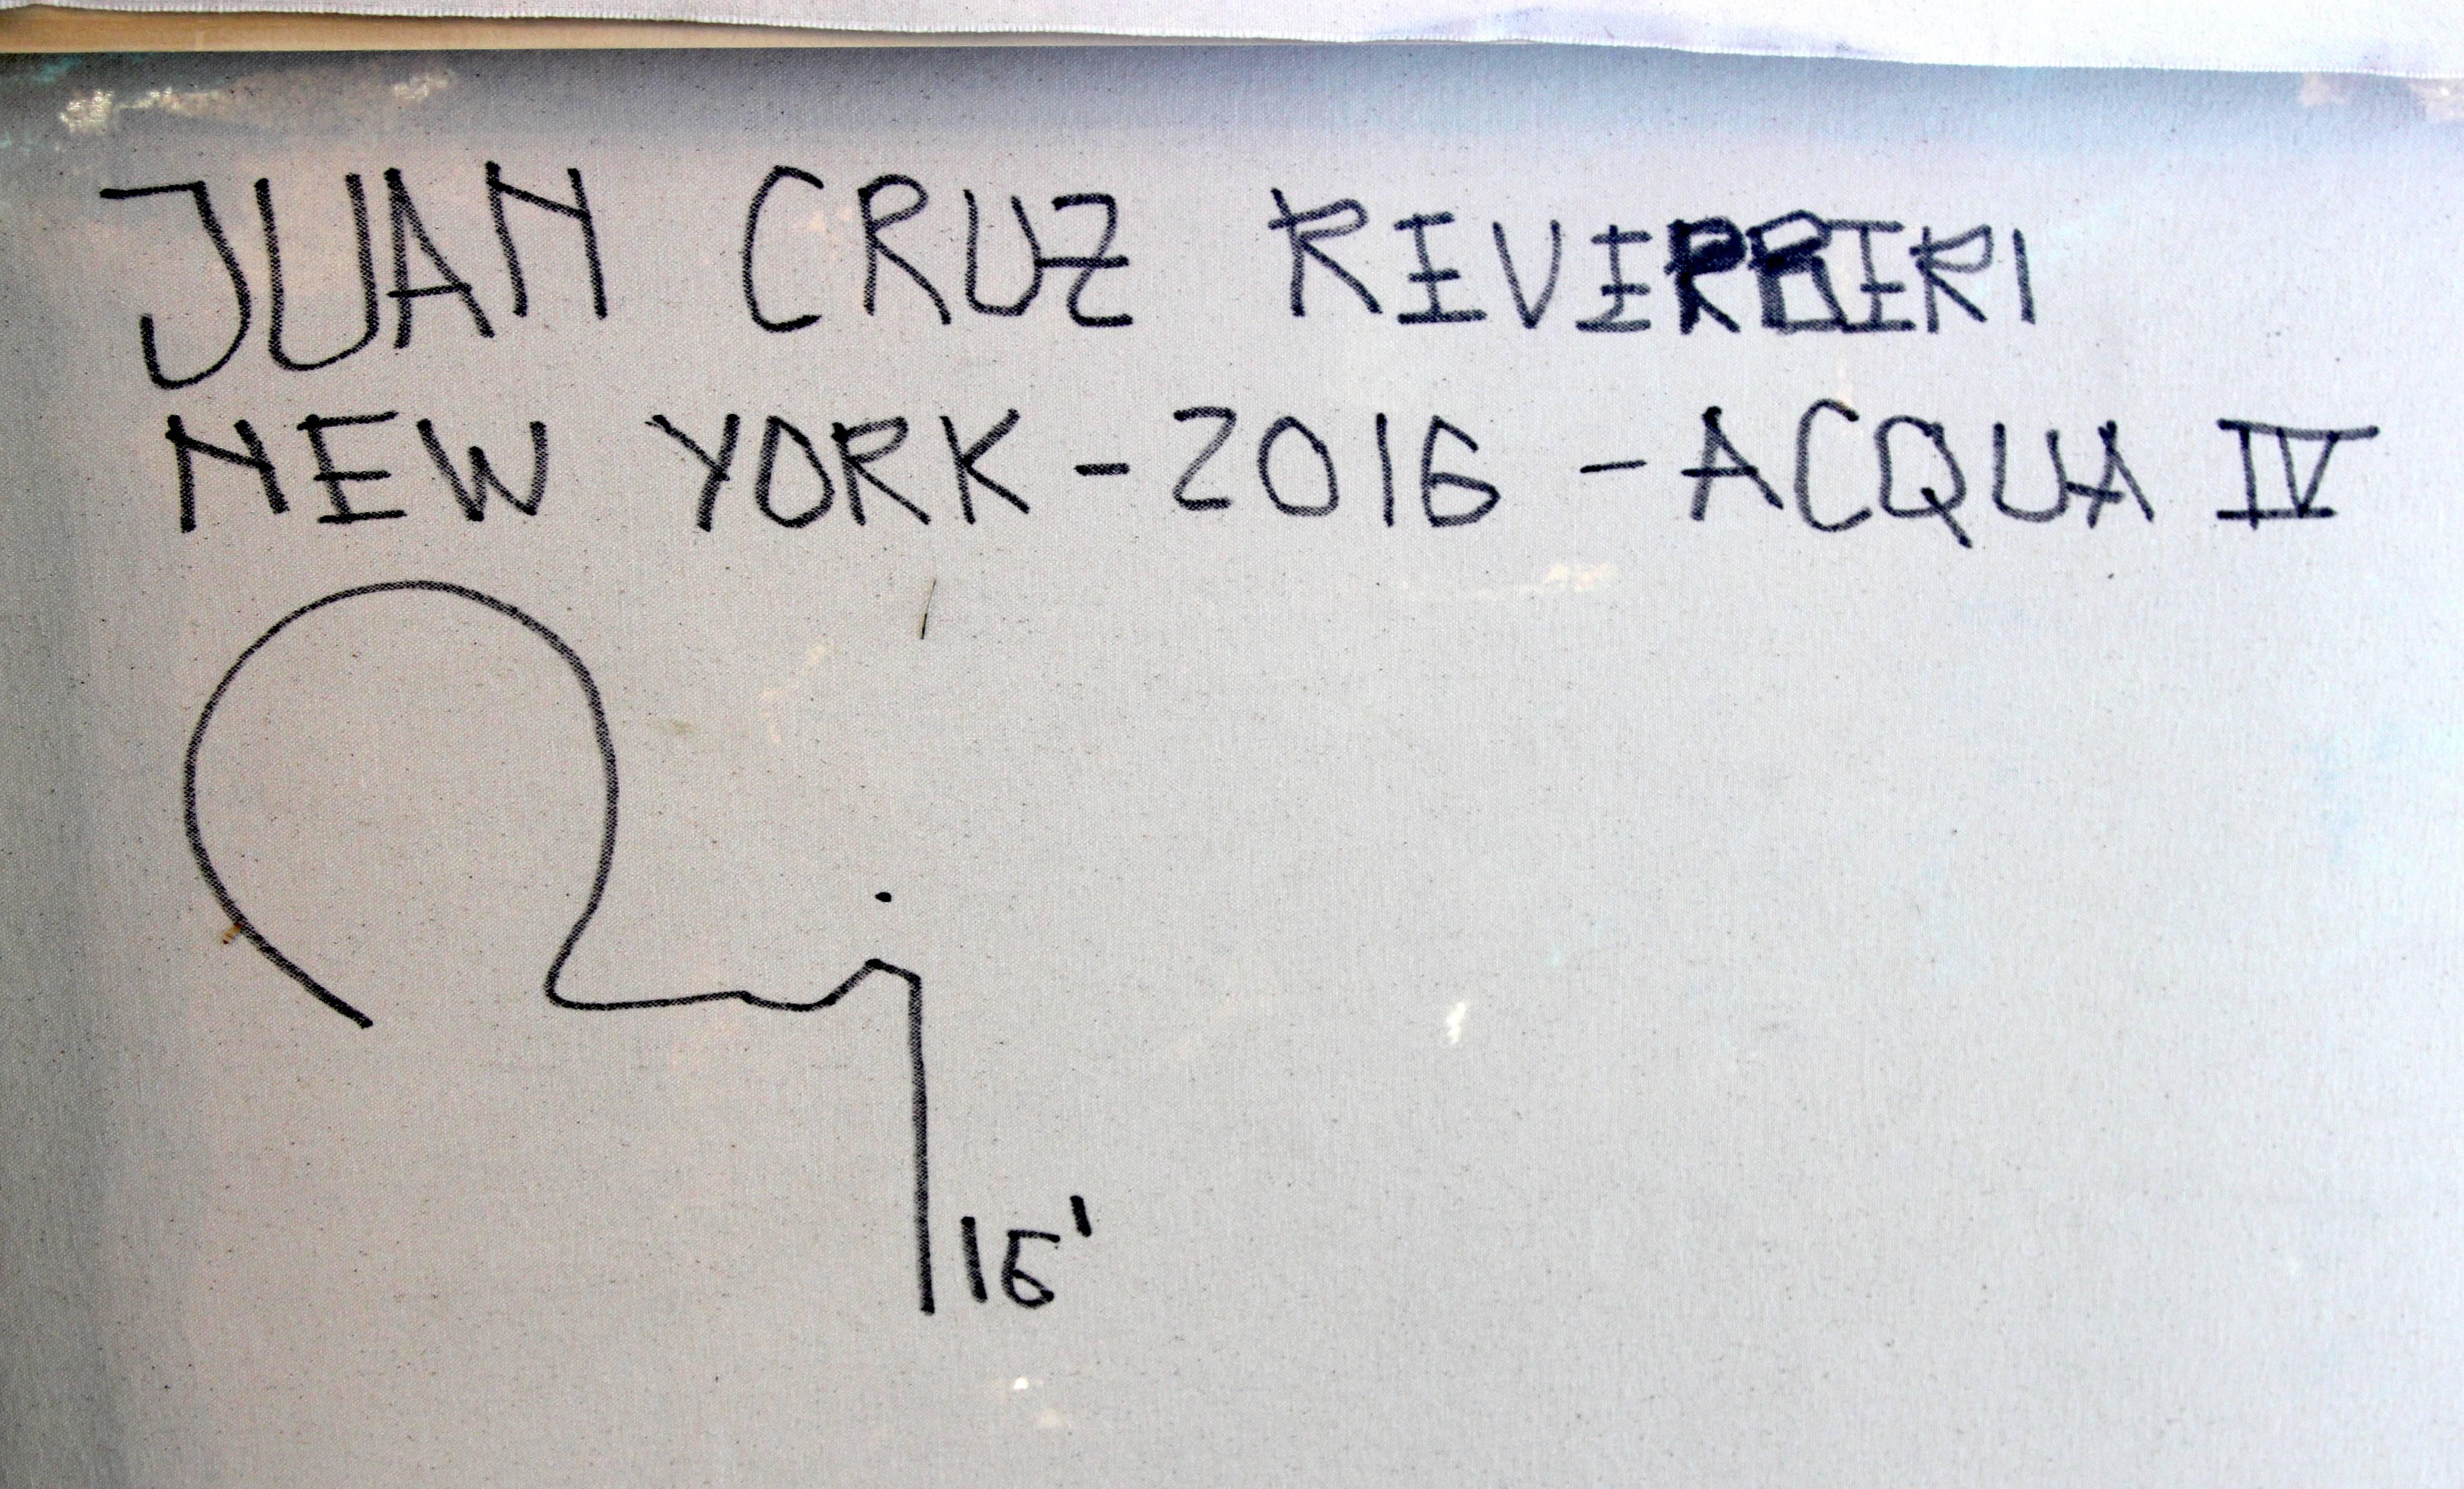 Juan Cruz Reverberi Acqua IV In Excellent Condition For Sale In Bridport, CT